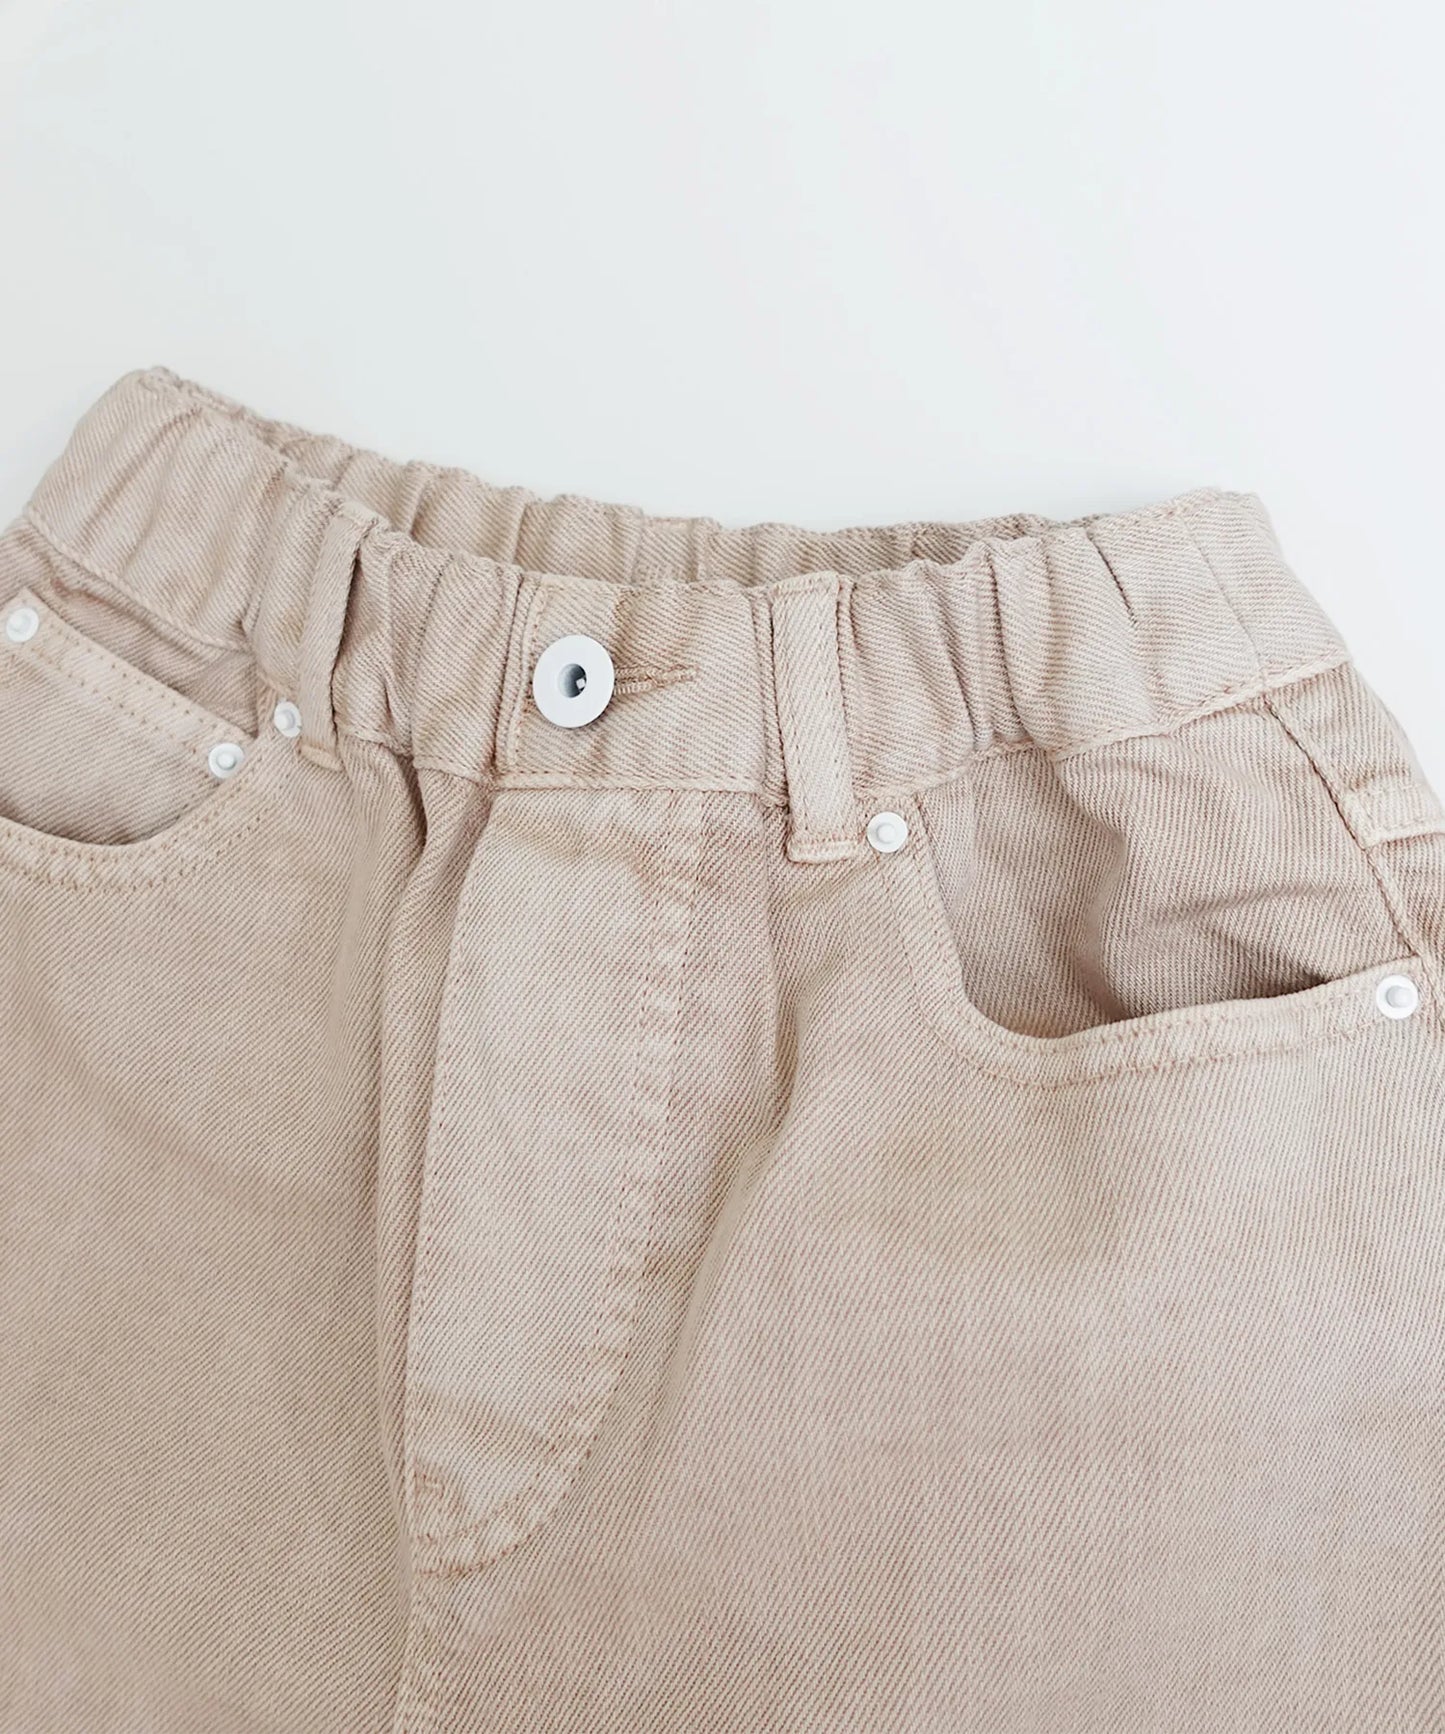 OUTLET [環保材質] OG G/D 牛仔短褲 有機棉 產品染色 [100-145cm]